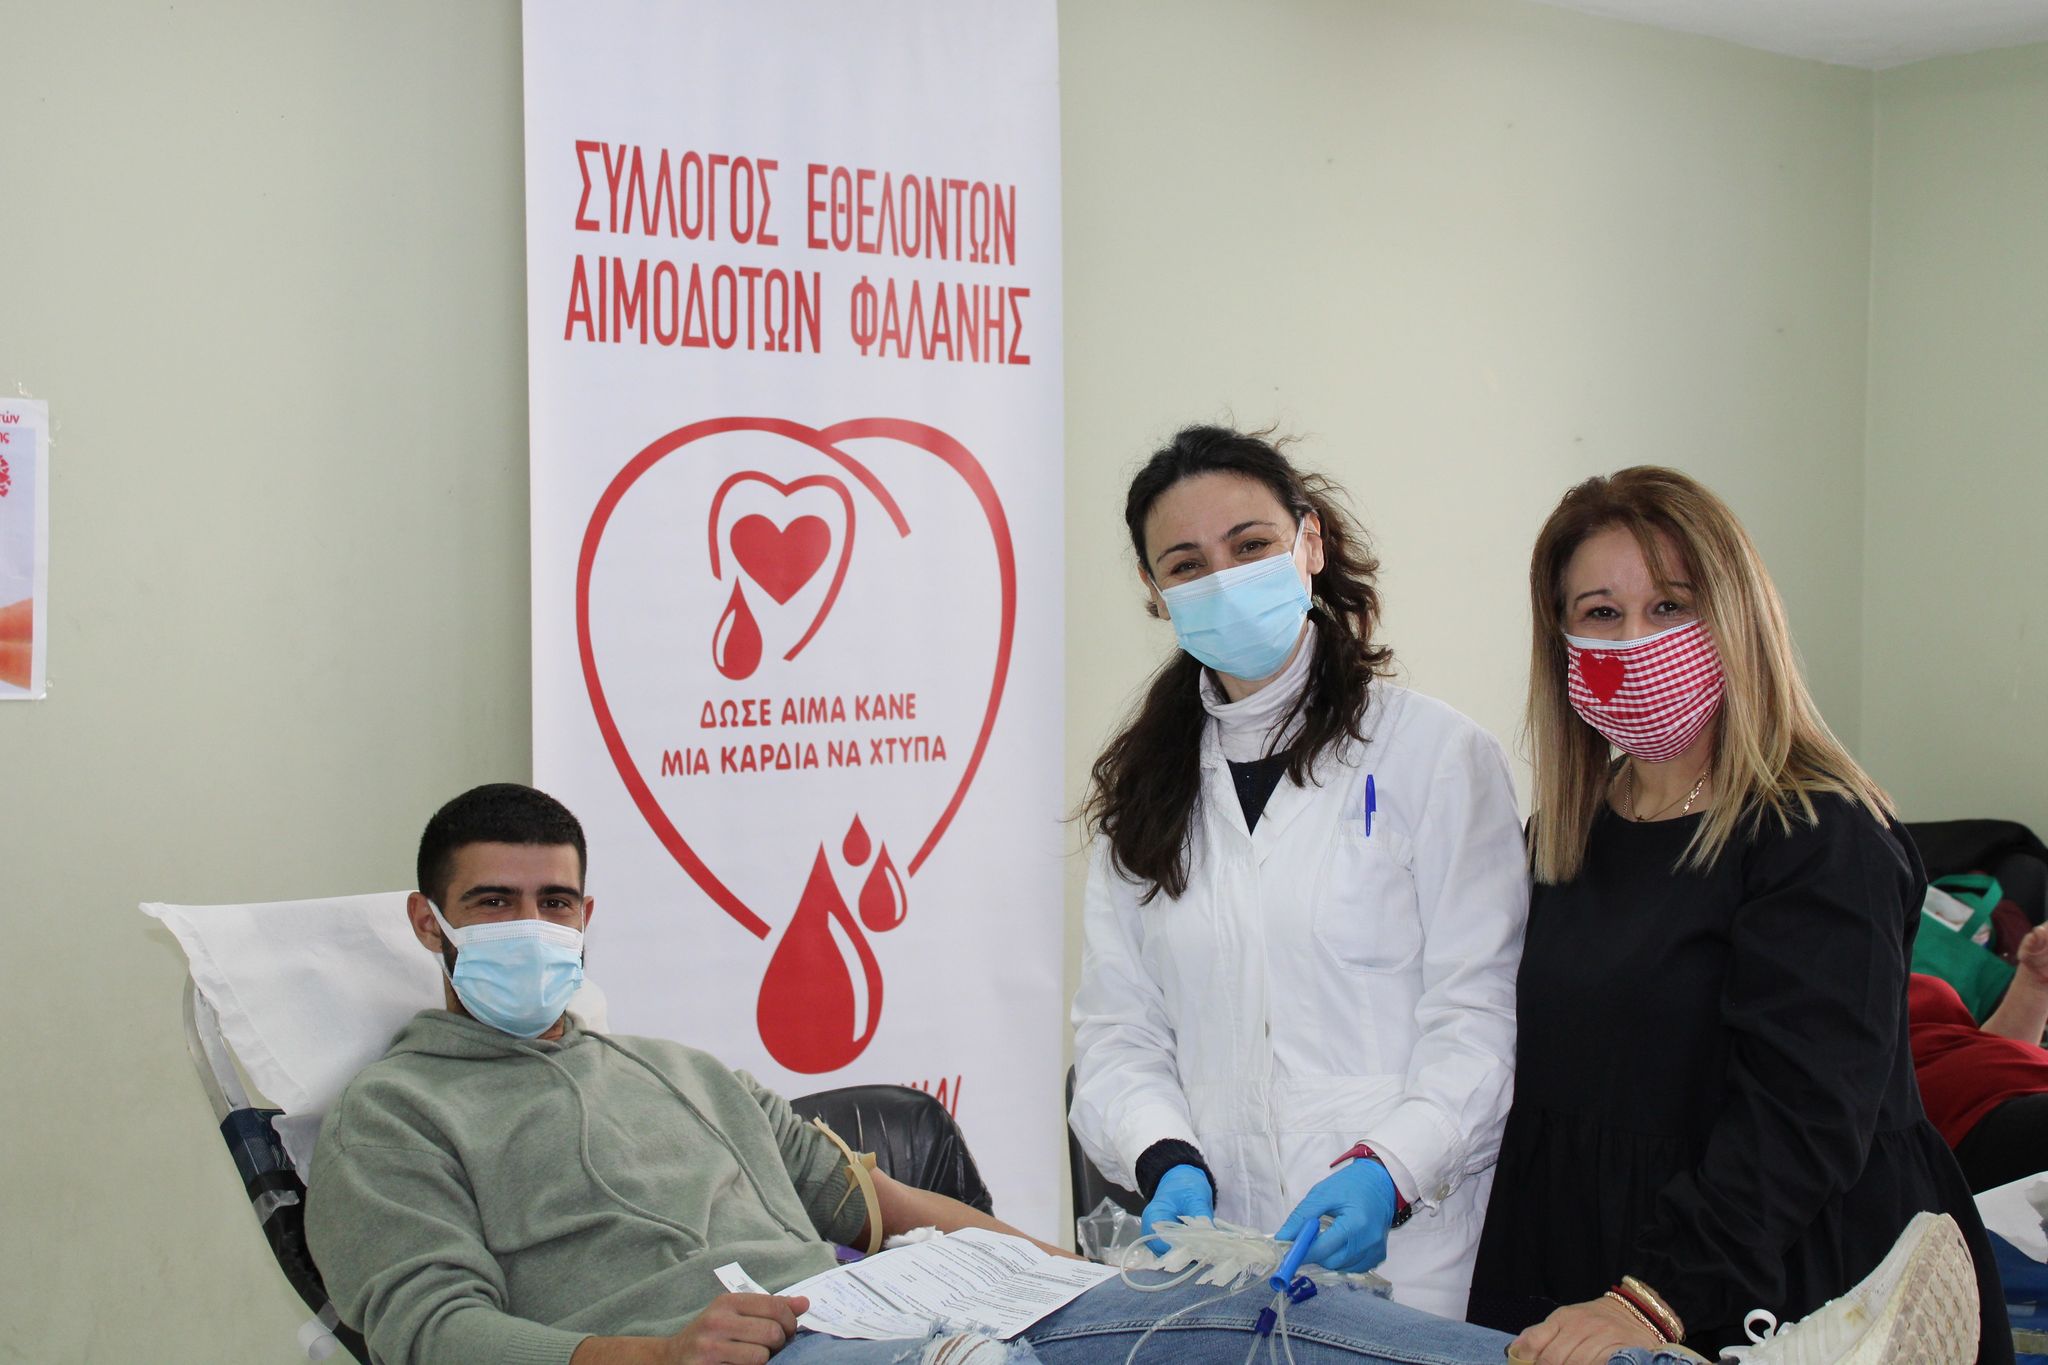 Σύλλογος Εθελοντών Αιμοδοτών Φαλάνης: ''Όσο υπάρχουν άνθρωποι θα... μεταγγίζεται η αξία της ζωής!"